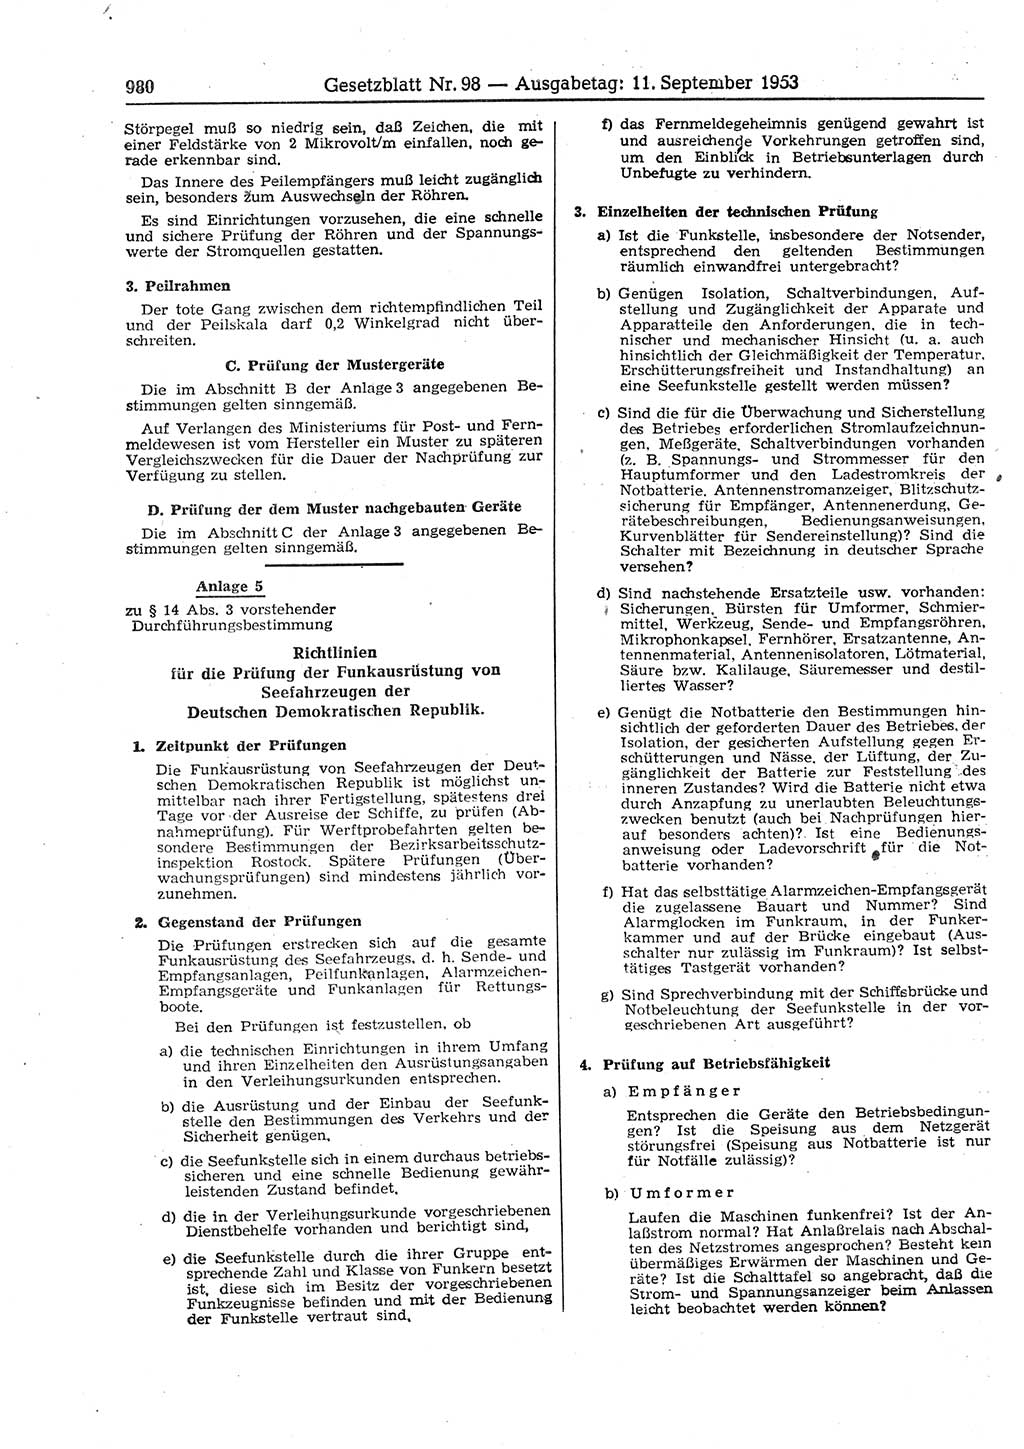 Gesetzblatt (GBl.) der Deutschen Demokratischen Republik (DDR) 1953, Seite 980 (GBl. DDR 1953, S. 980)